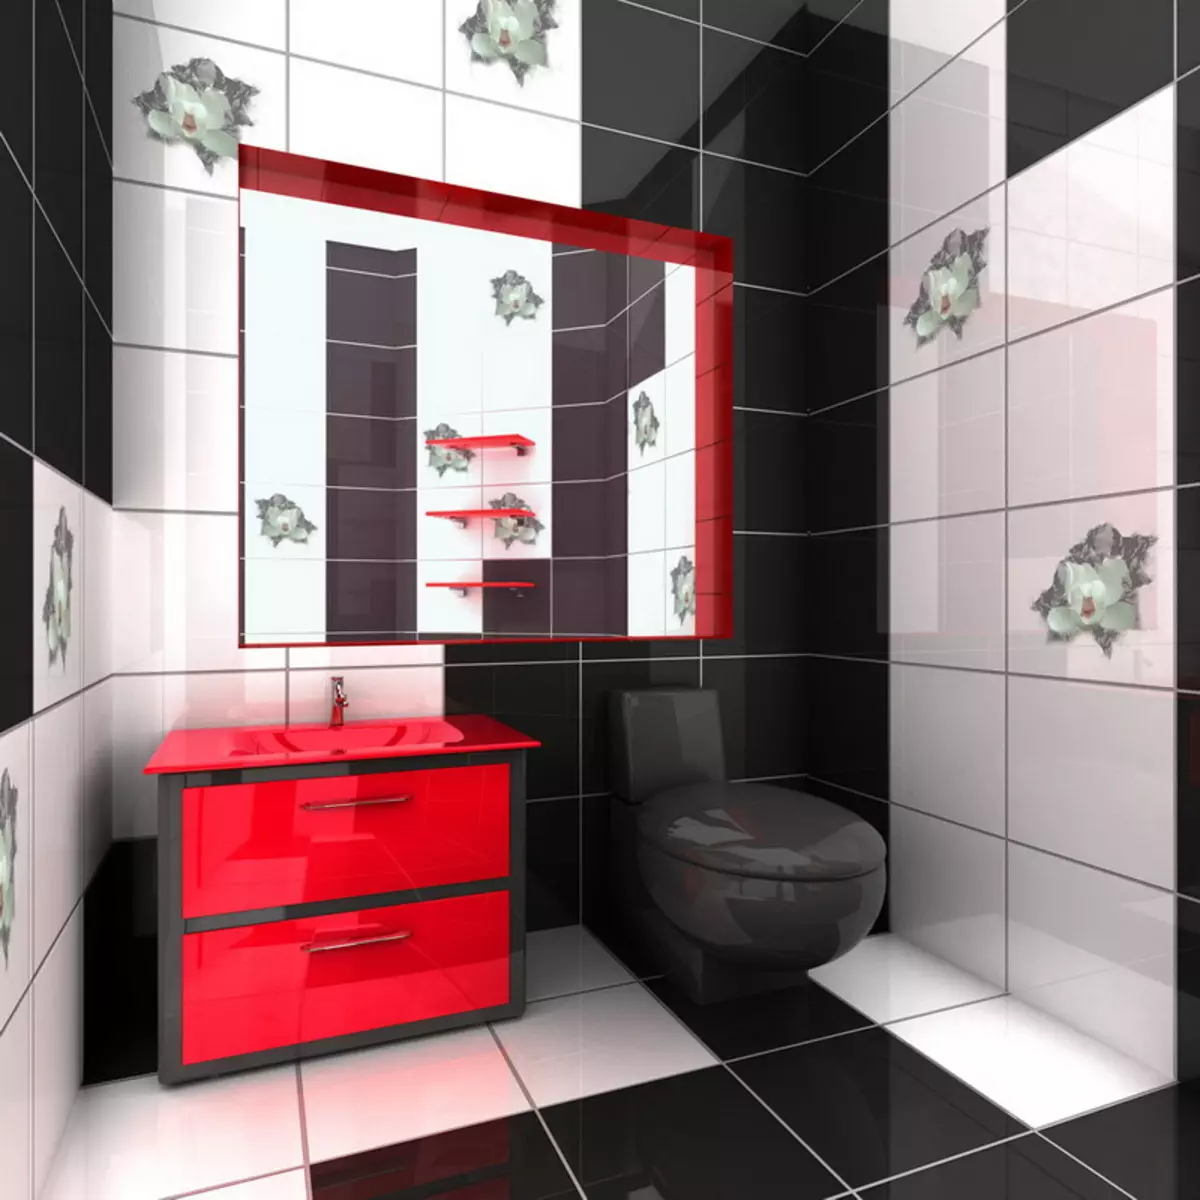 Μαύρη τουαλέτα (67 φωτογραφίες): Σχεδιασμός τουαλέτας σε ασπρόμαυρα χρώματα, επιλογή από μια σκοτεινή τουαλέτα χρώματος σε ένα διαμέρισμα, φινίρισμα με μαύρα και κόκκινα πλακάκια 10501_15